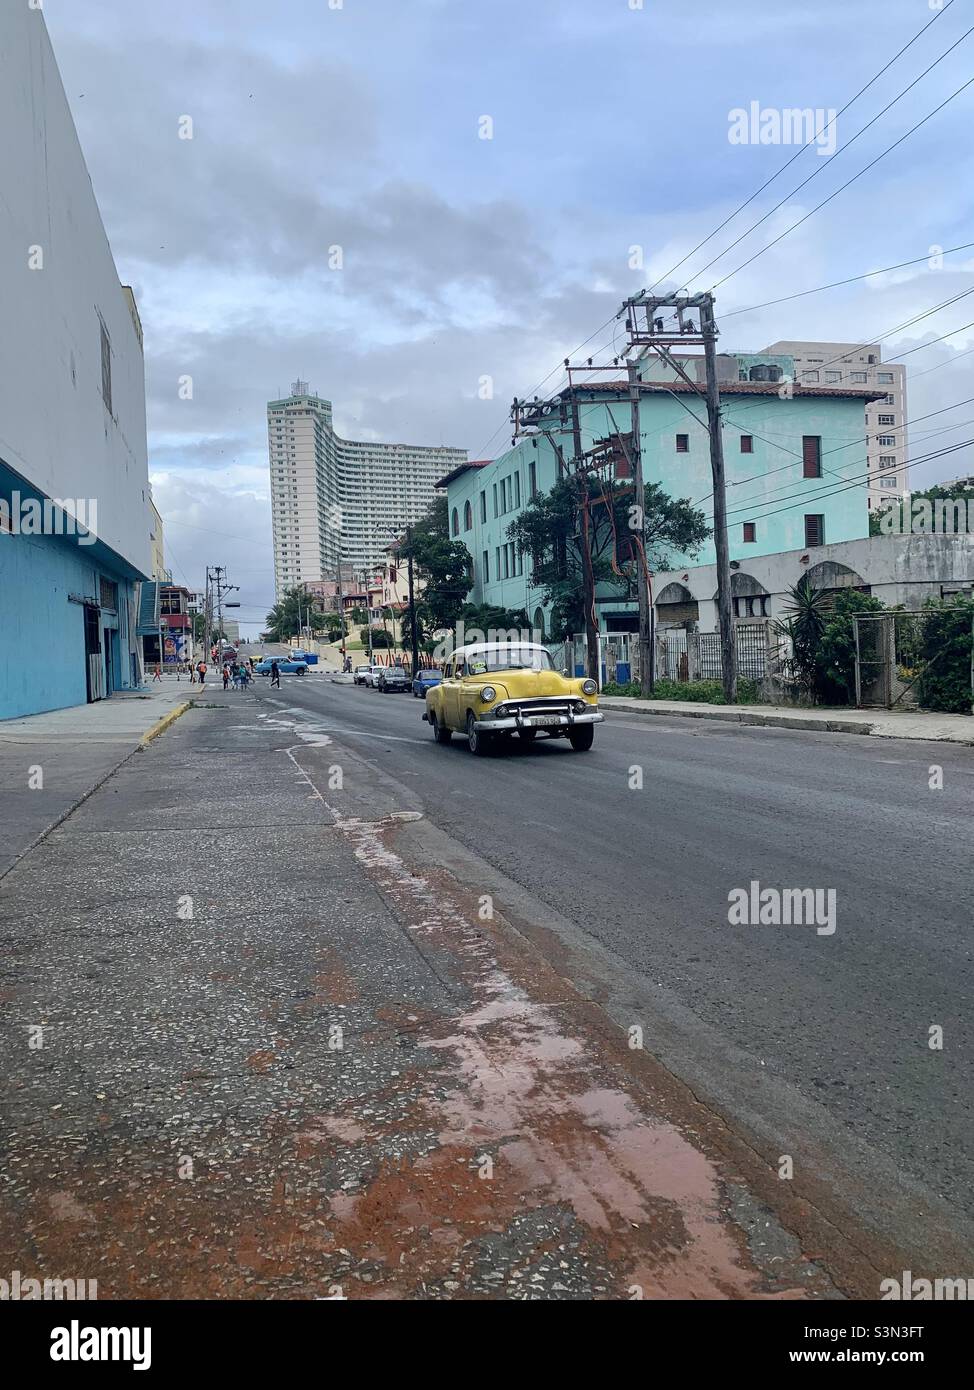 M rue à Vedado, la Havane, Cuba.Itinéraire fréquent pour les anciens qui travaillent comme taxis.Photo prise à l'arrière de l'hôtel Havana libre. Banque D'Images